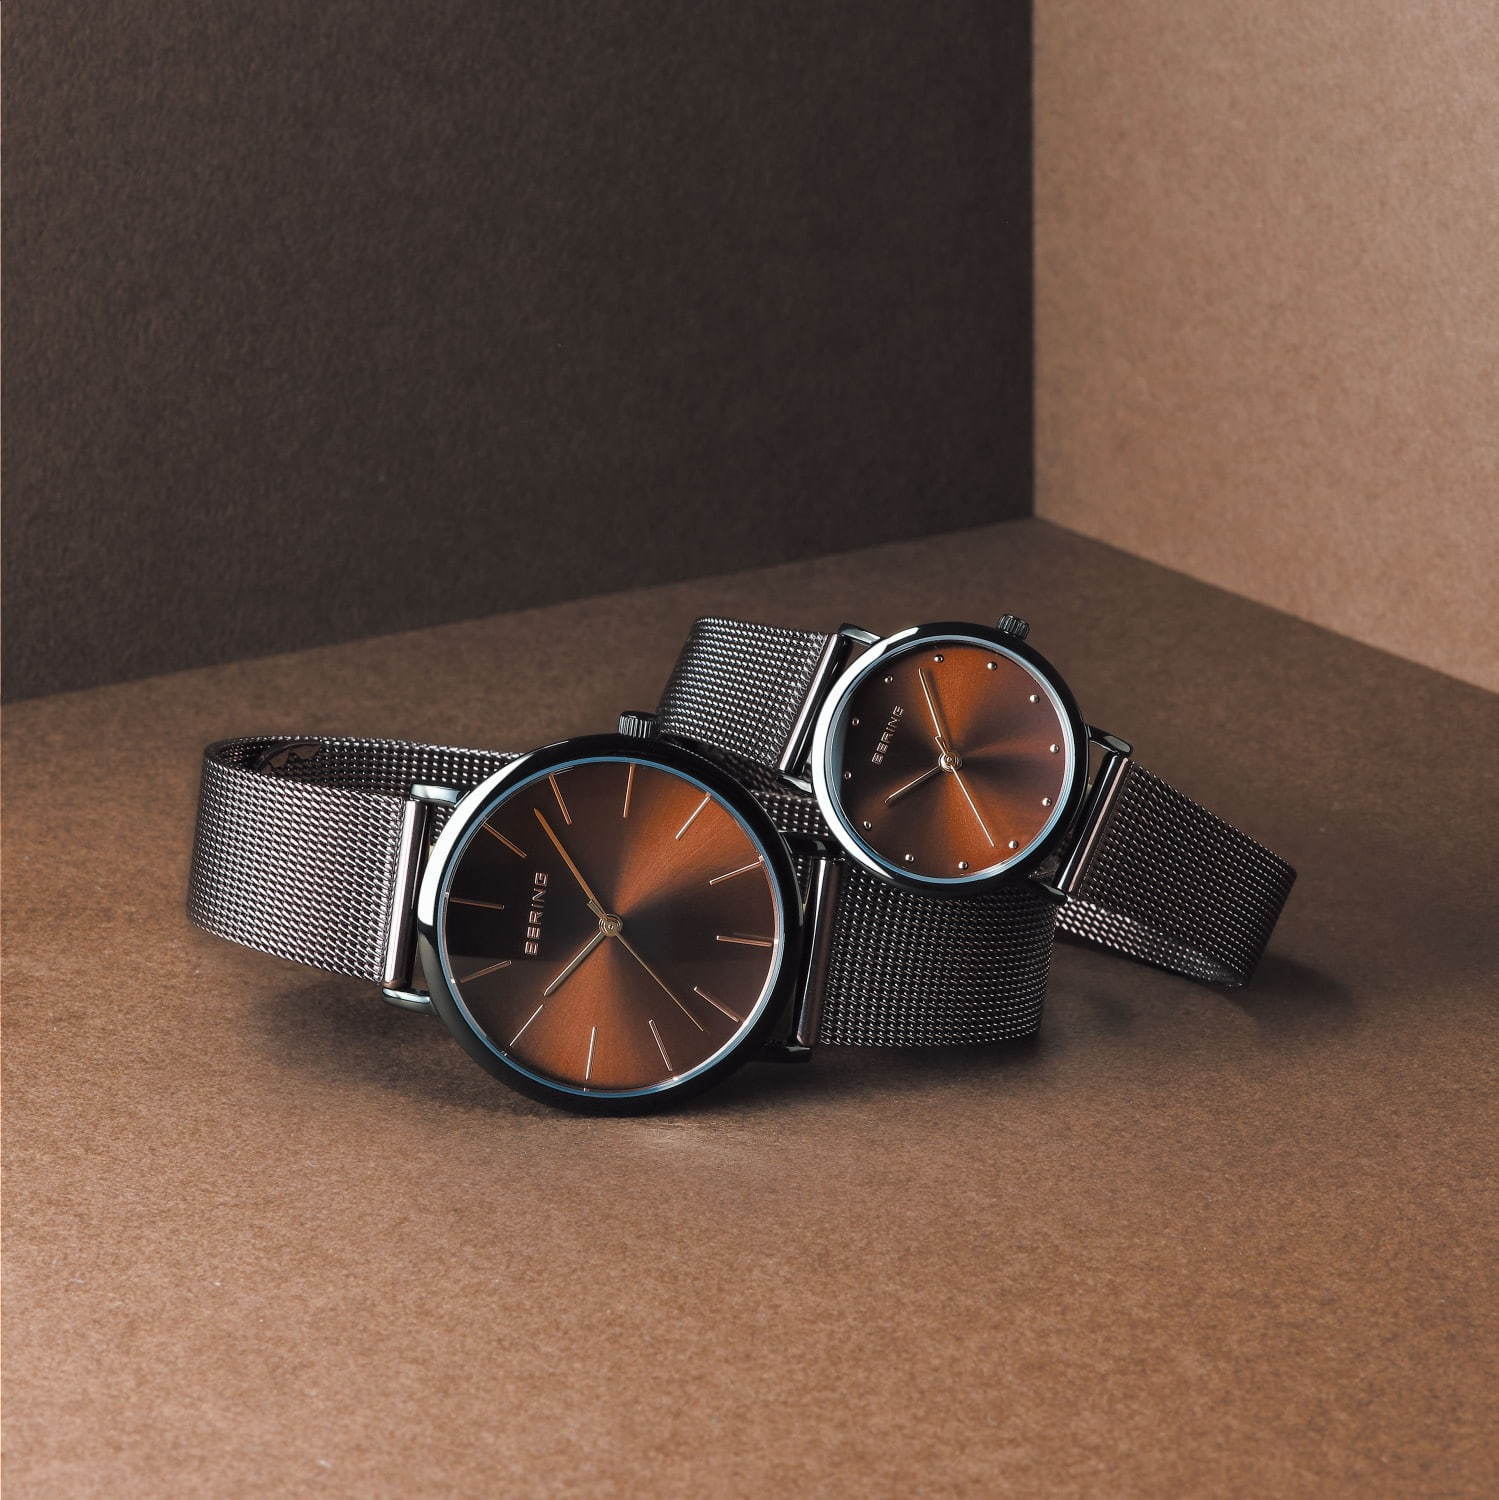 価格別 シンプルメンズ腕時計 特集 おしゃれな男性におすすめの人気ブランドウォッチ ファッションプレス